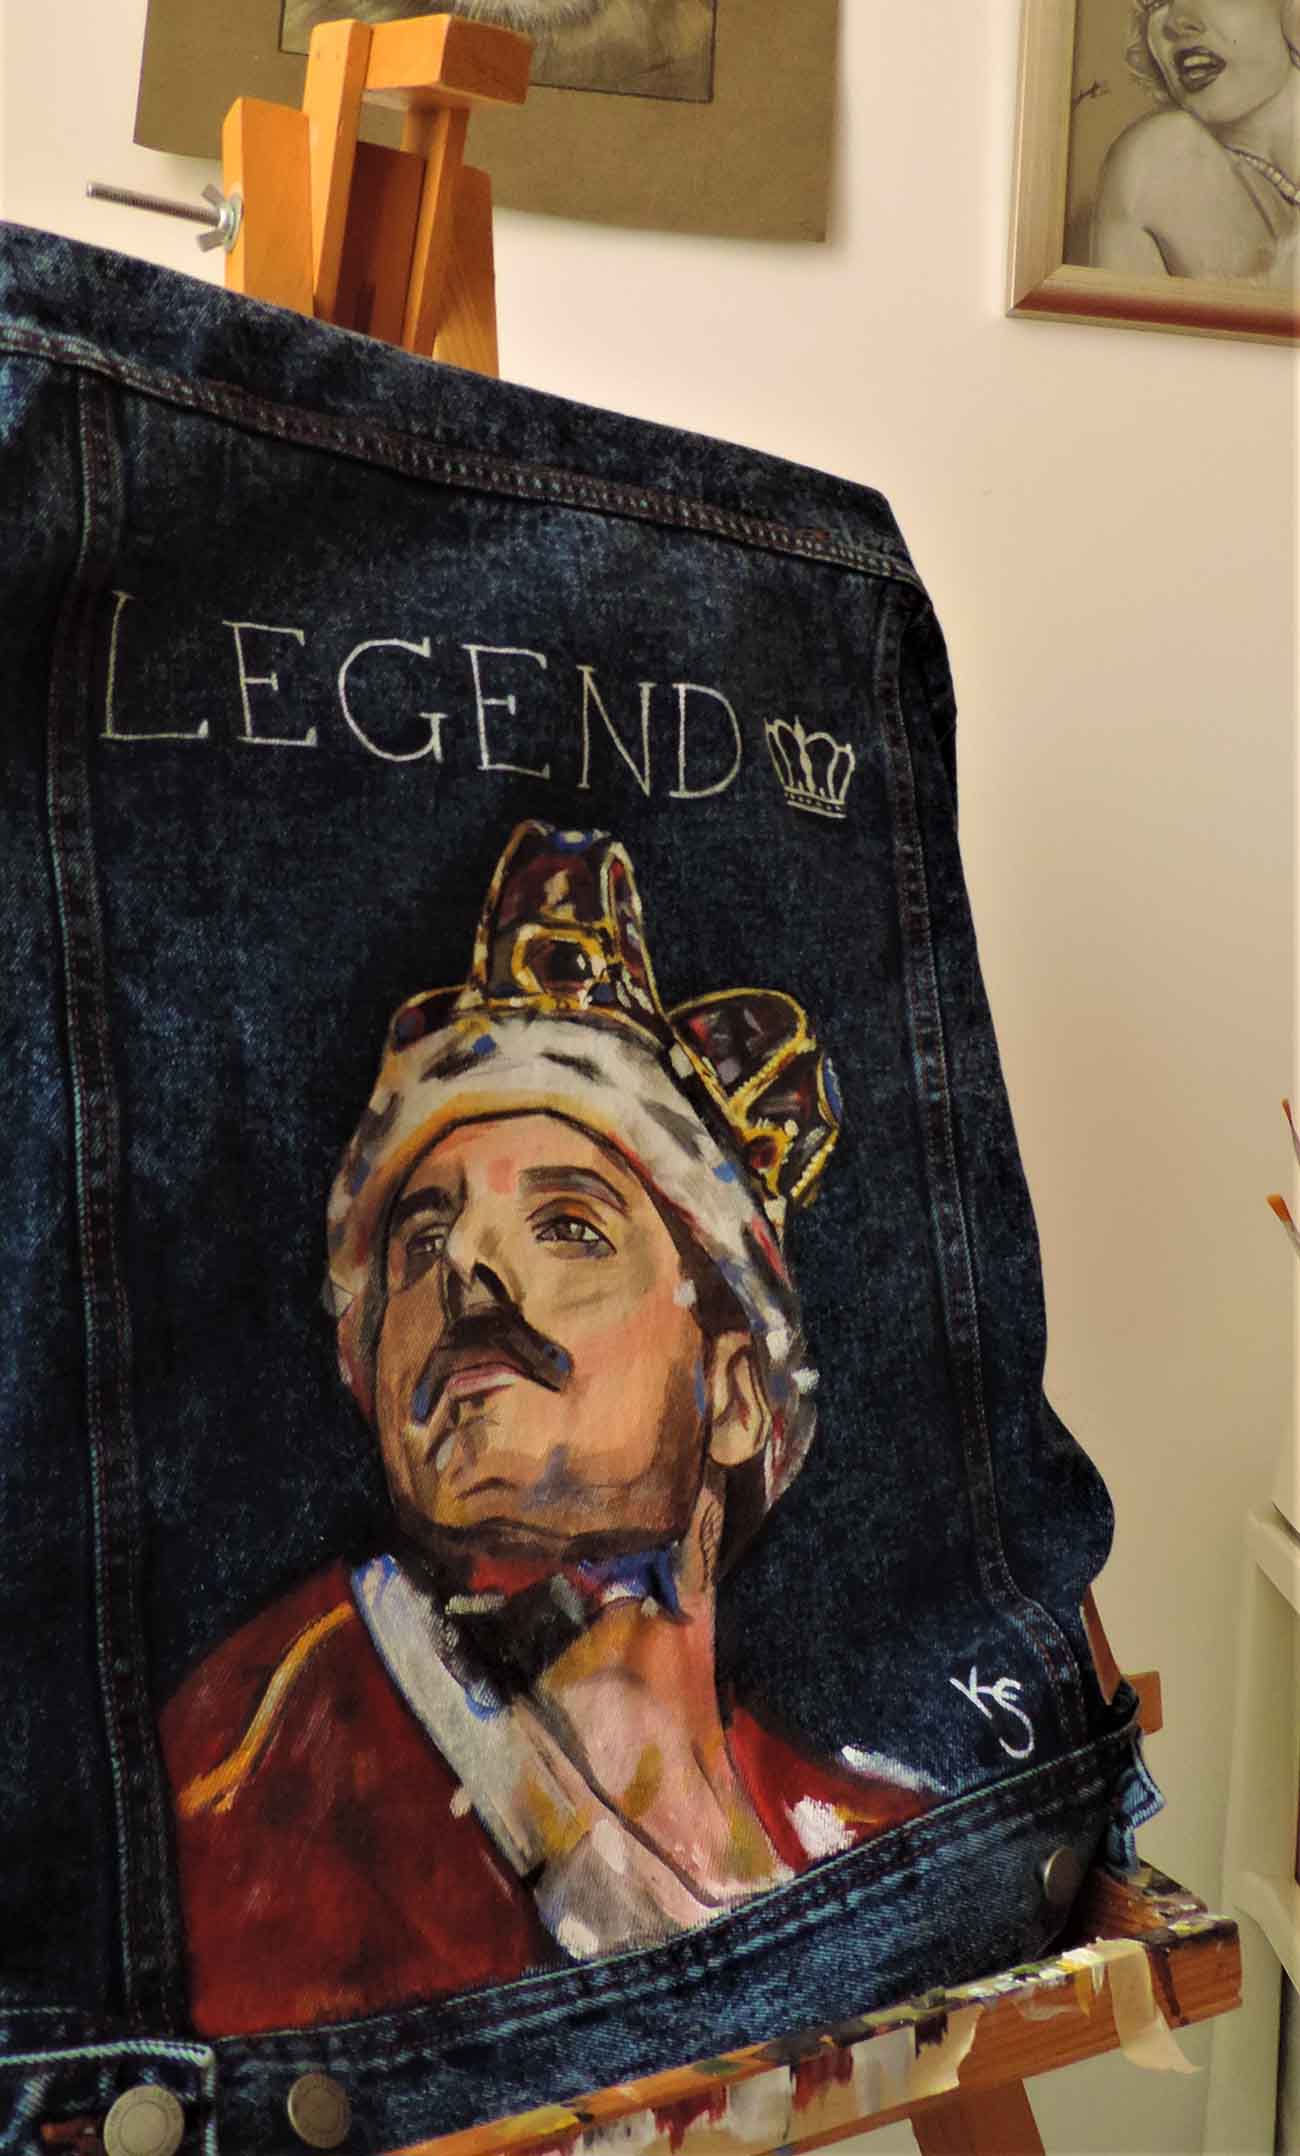 K-art. Chaqueta con pintura de Freddie Mercury